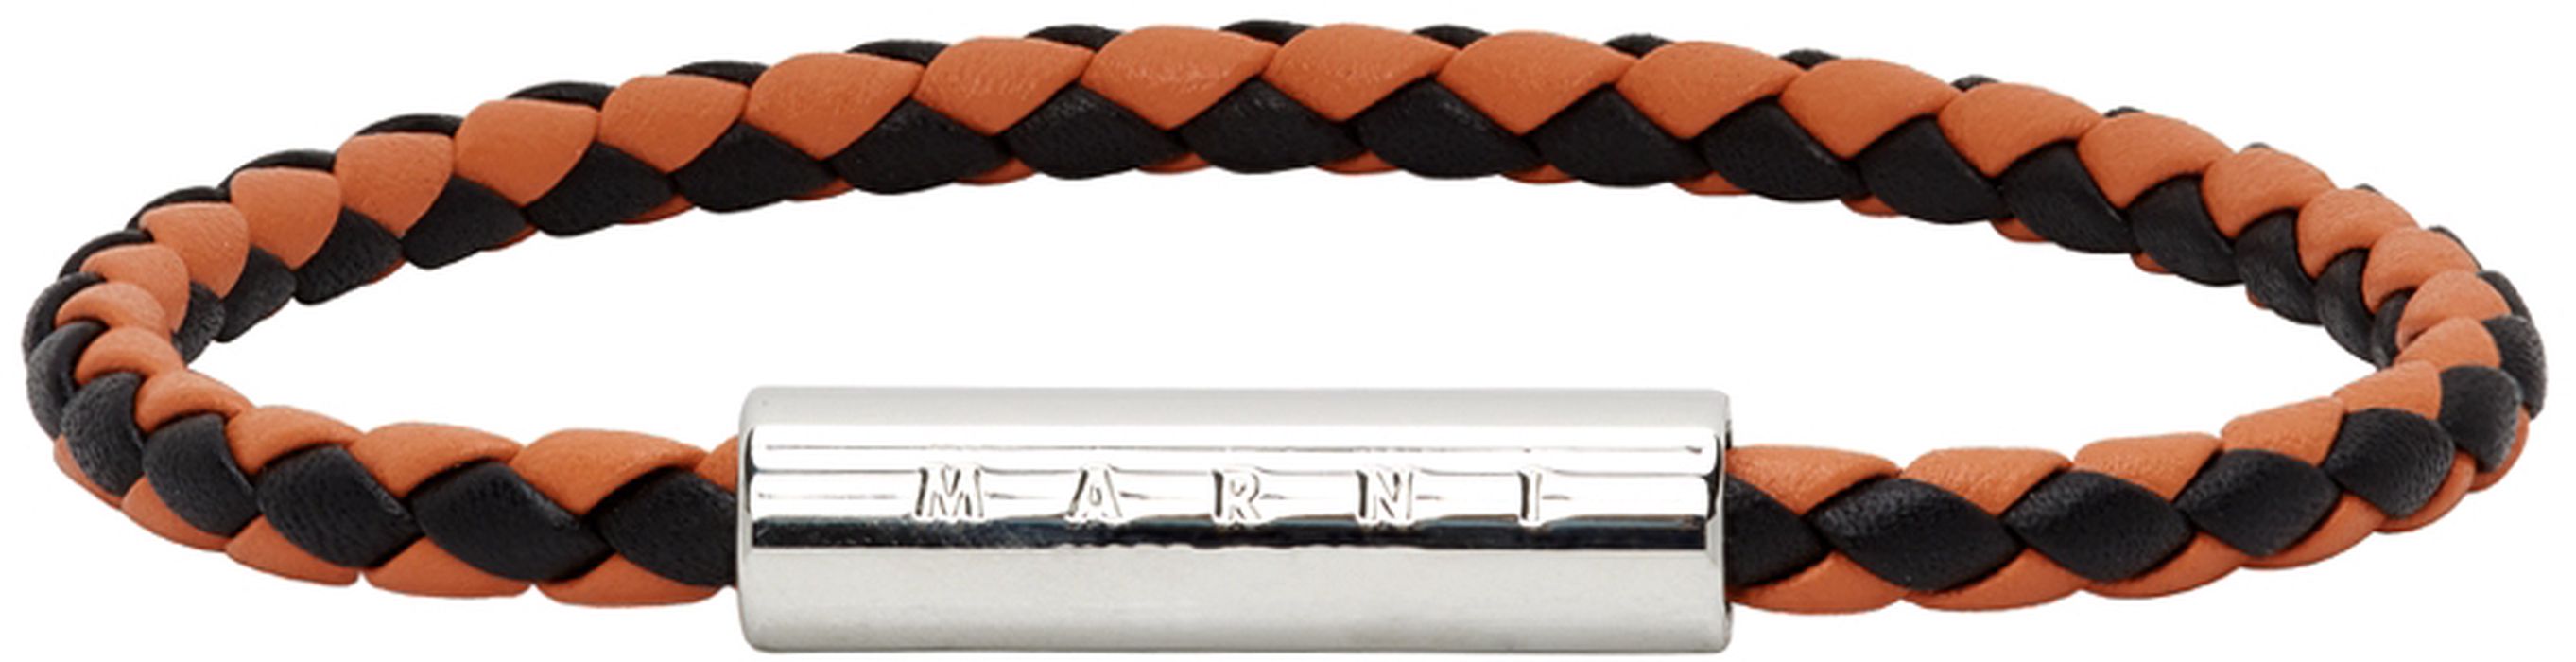 Marni Orange & Navy Leather Braided Bracelet